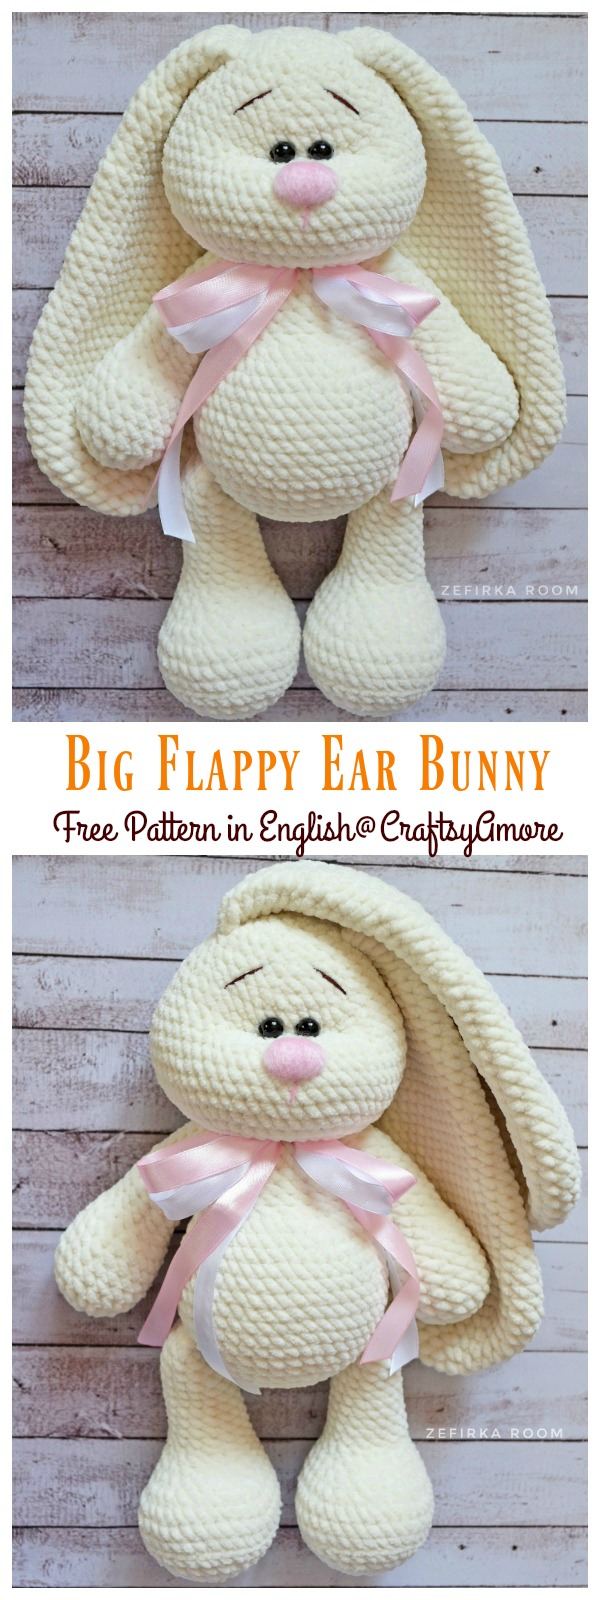 Crochet amigurumi long eared bunny